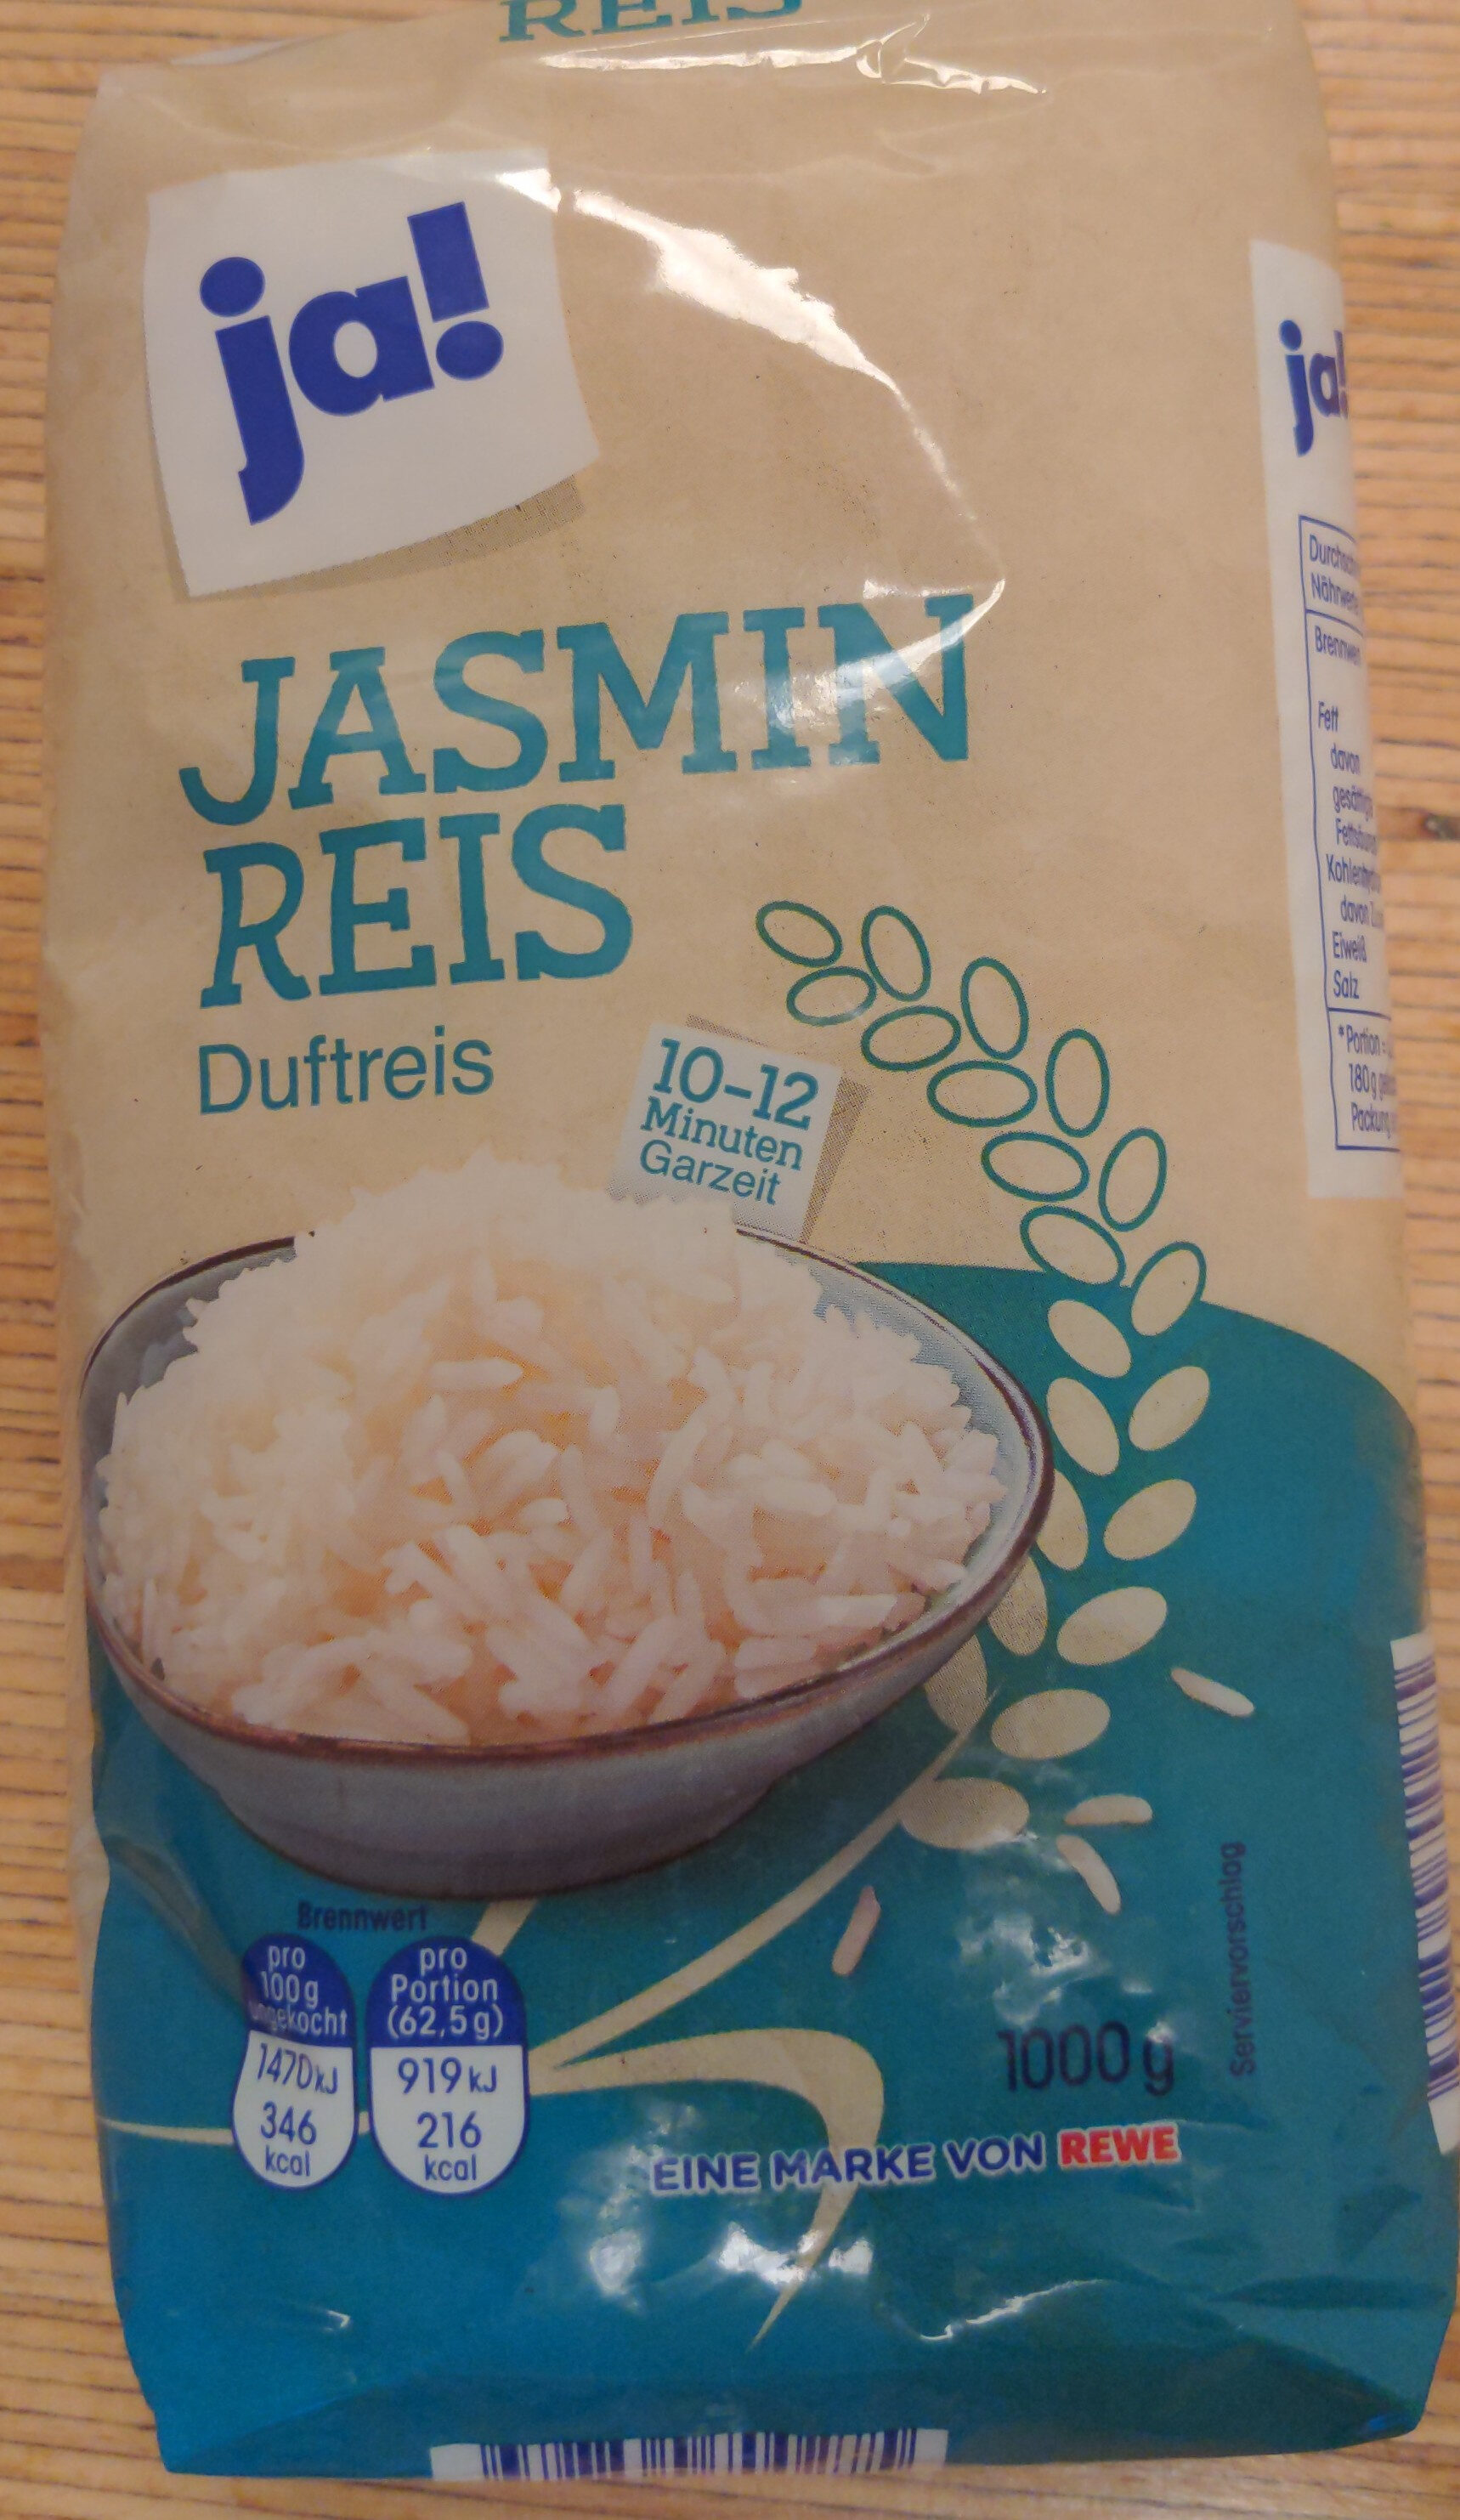 Jasmin Reis Duftreis - Product - en